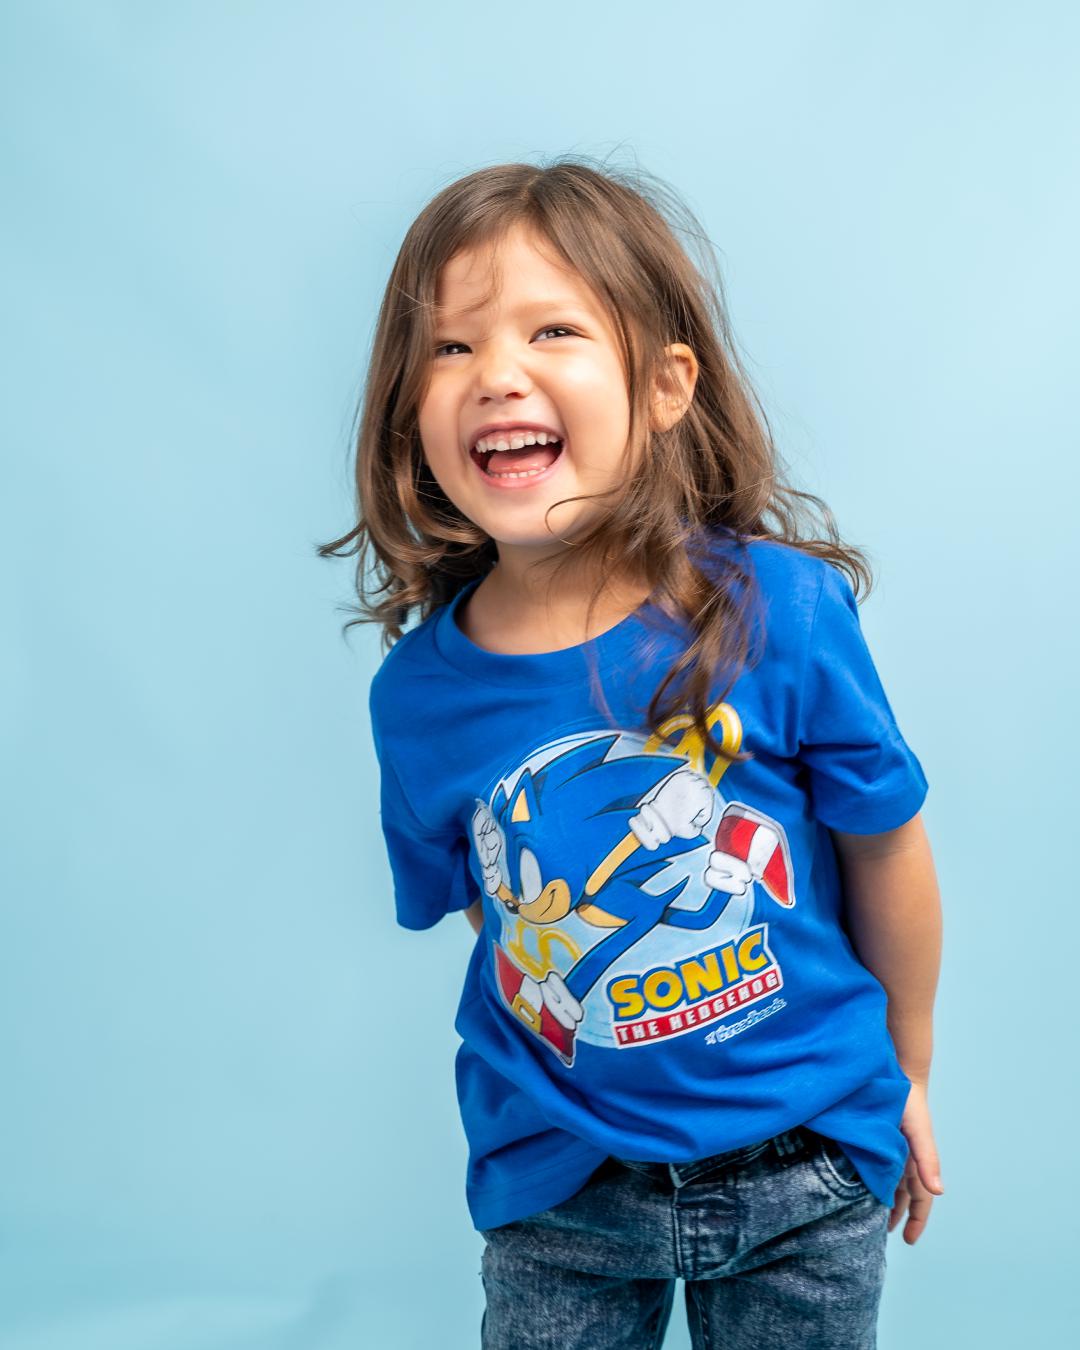 Vintage Sonic Kids T-Shirt Australia Online #colour_blue